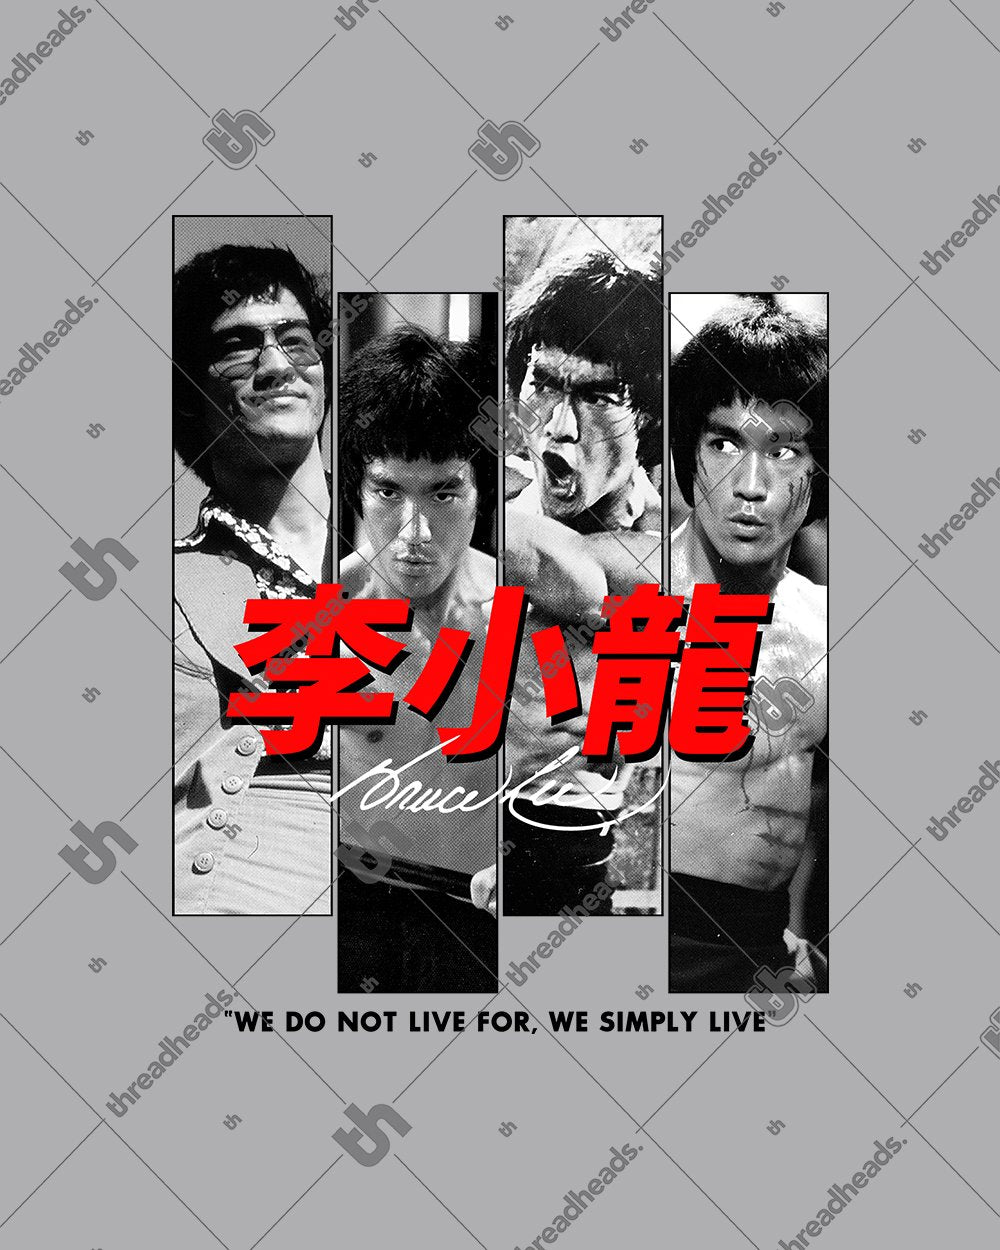 Bruce Lee Scenes T-Shirt Australia Online #colour_grey